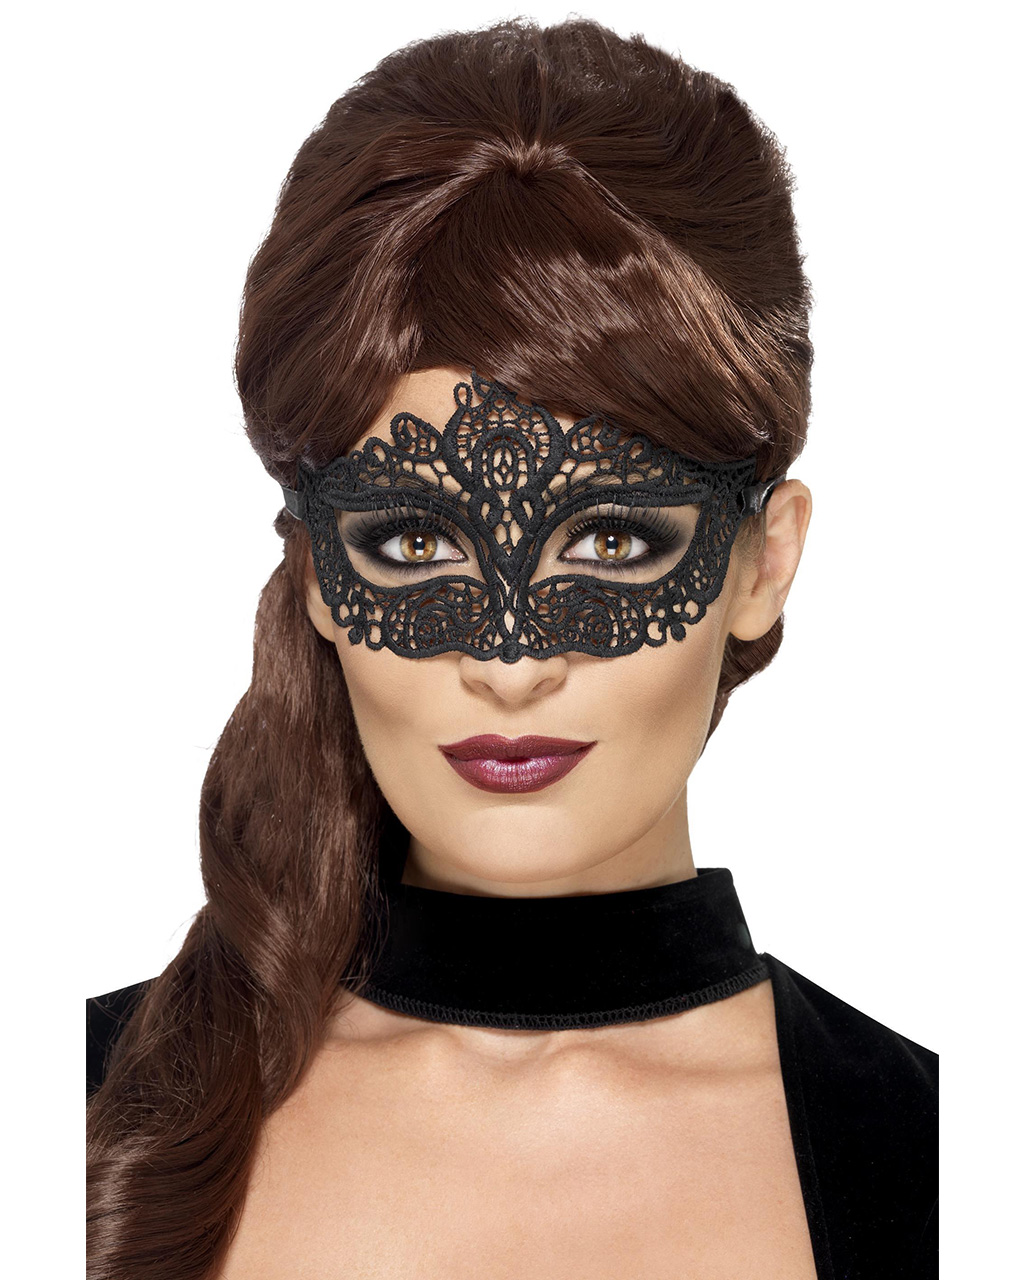 Черная маска на глаза. Маска на глаза карнавальная. Кружевная маска для лица. Кружевная маска на глаза. Маска карнавальная черная.